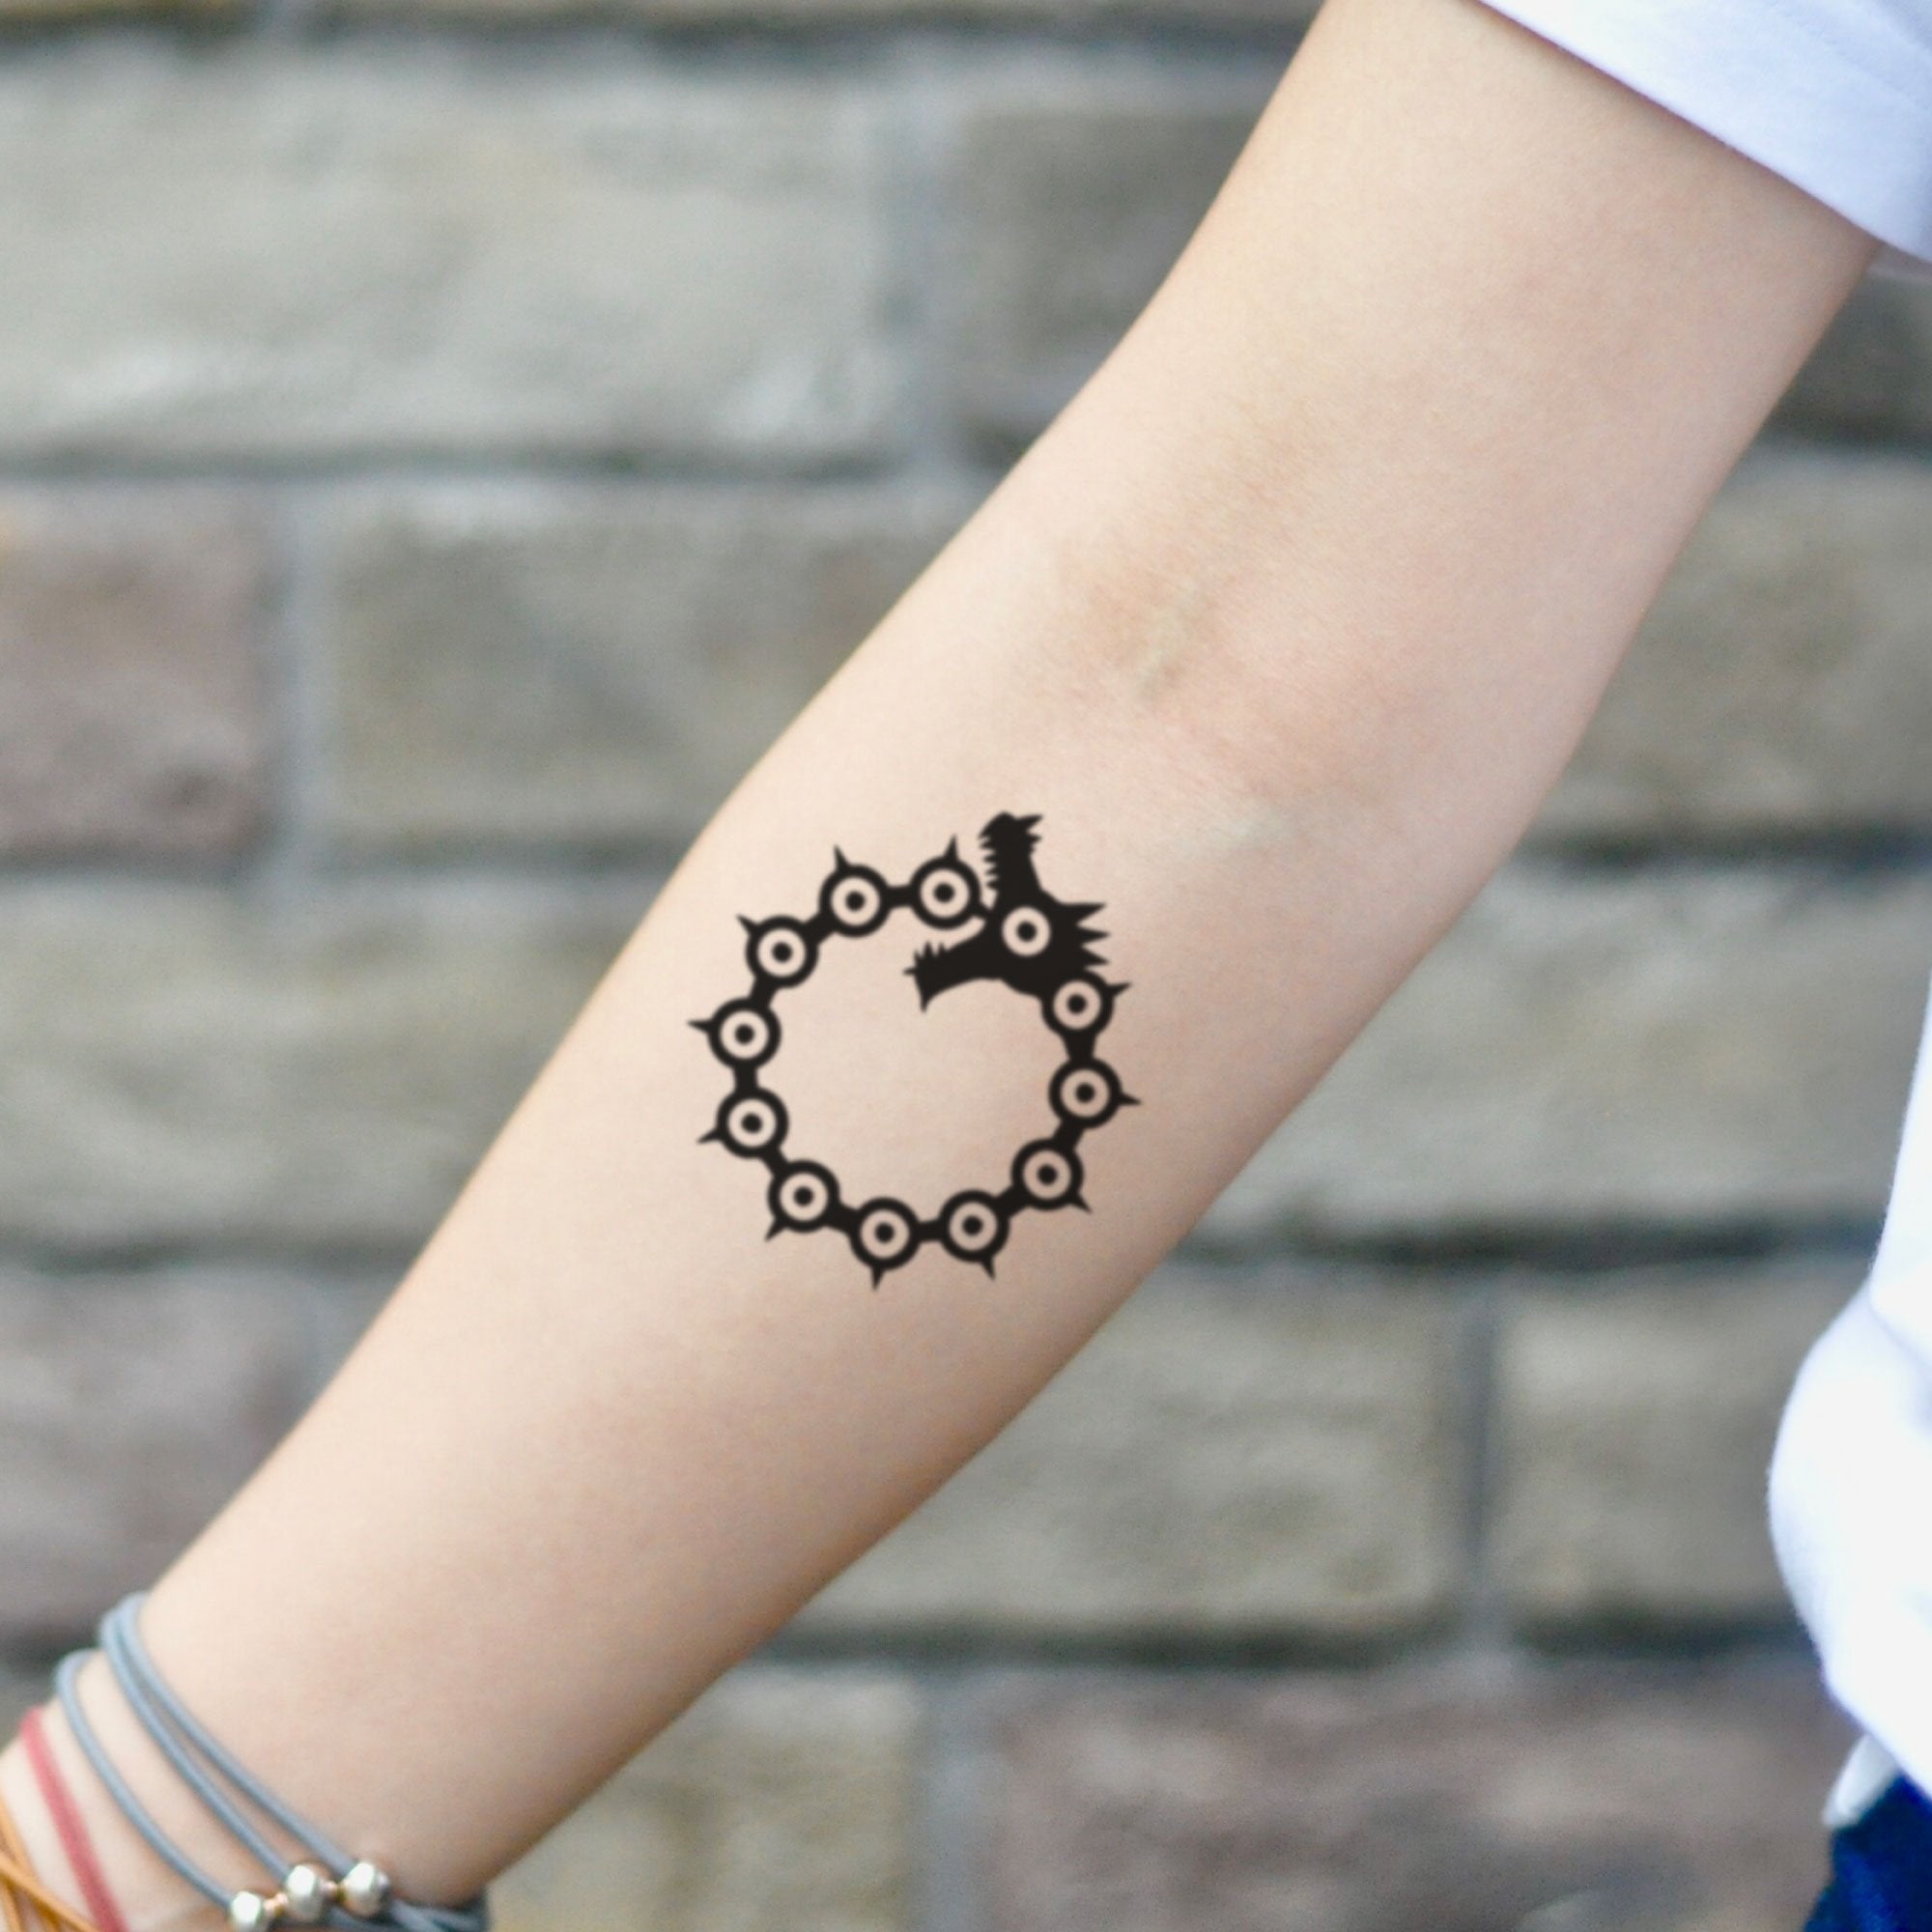 Meliodas Tattoos Symbolism Meanings  More